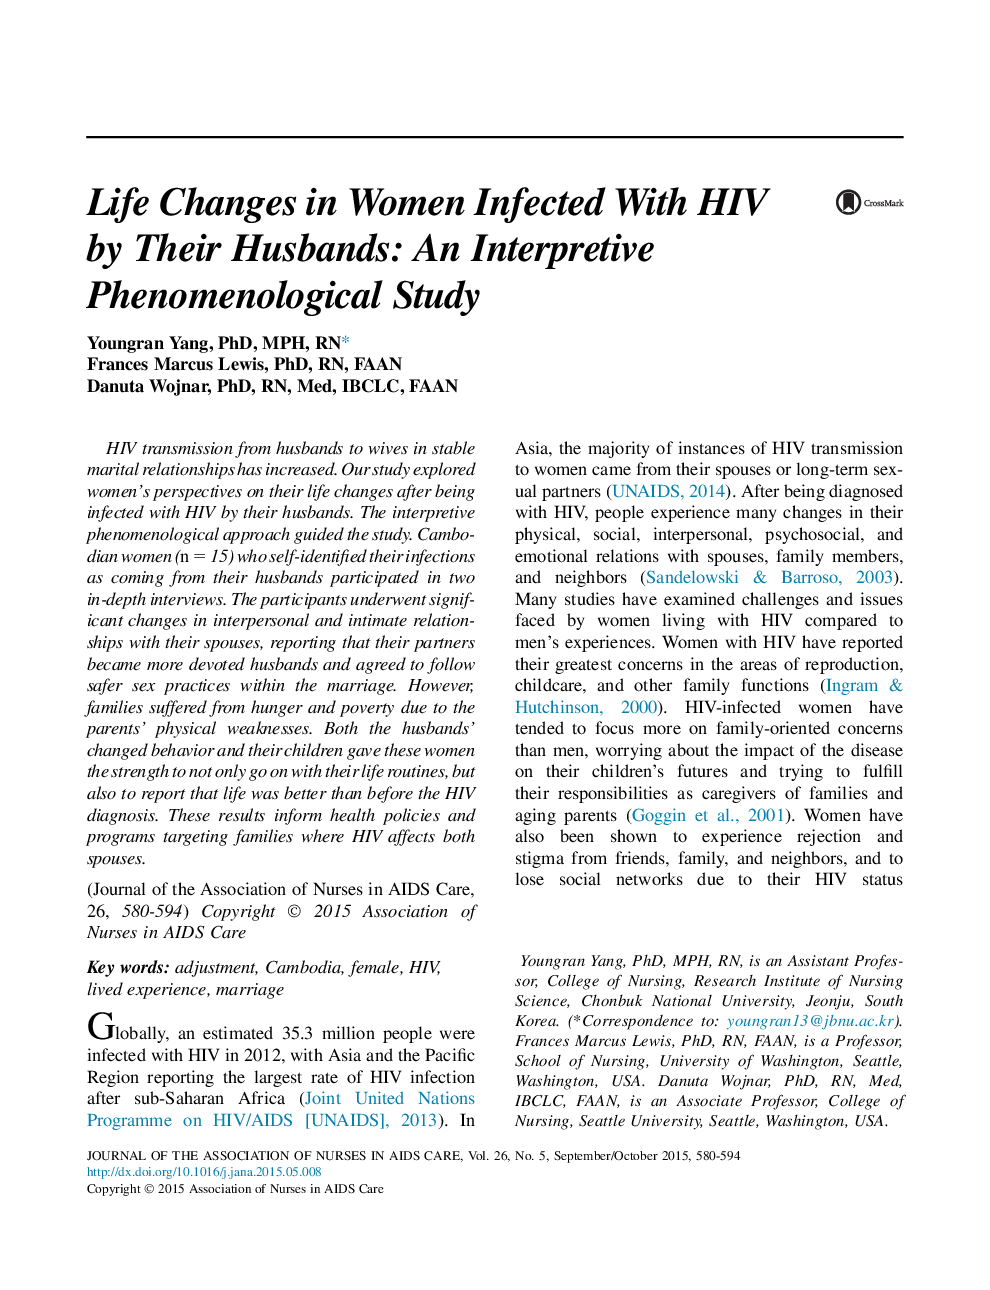 تغییرات زندگی در زنان مبتلا به اچ آی وی توسط شوهرانشان: یک مطالعه پیاژه شناختی تفسیری